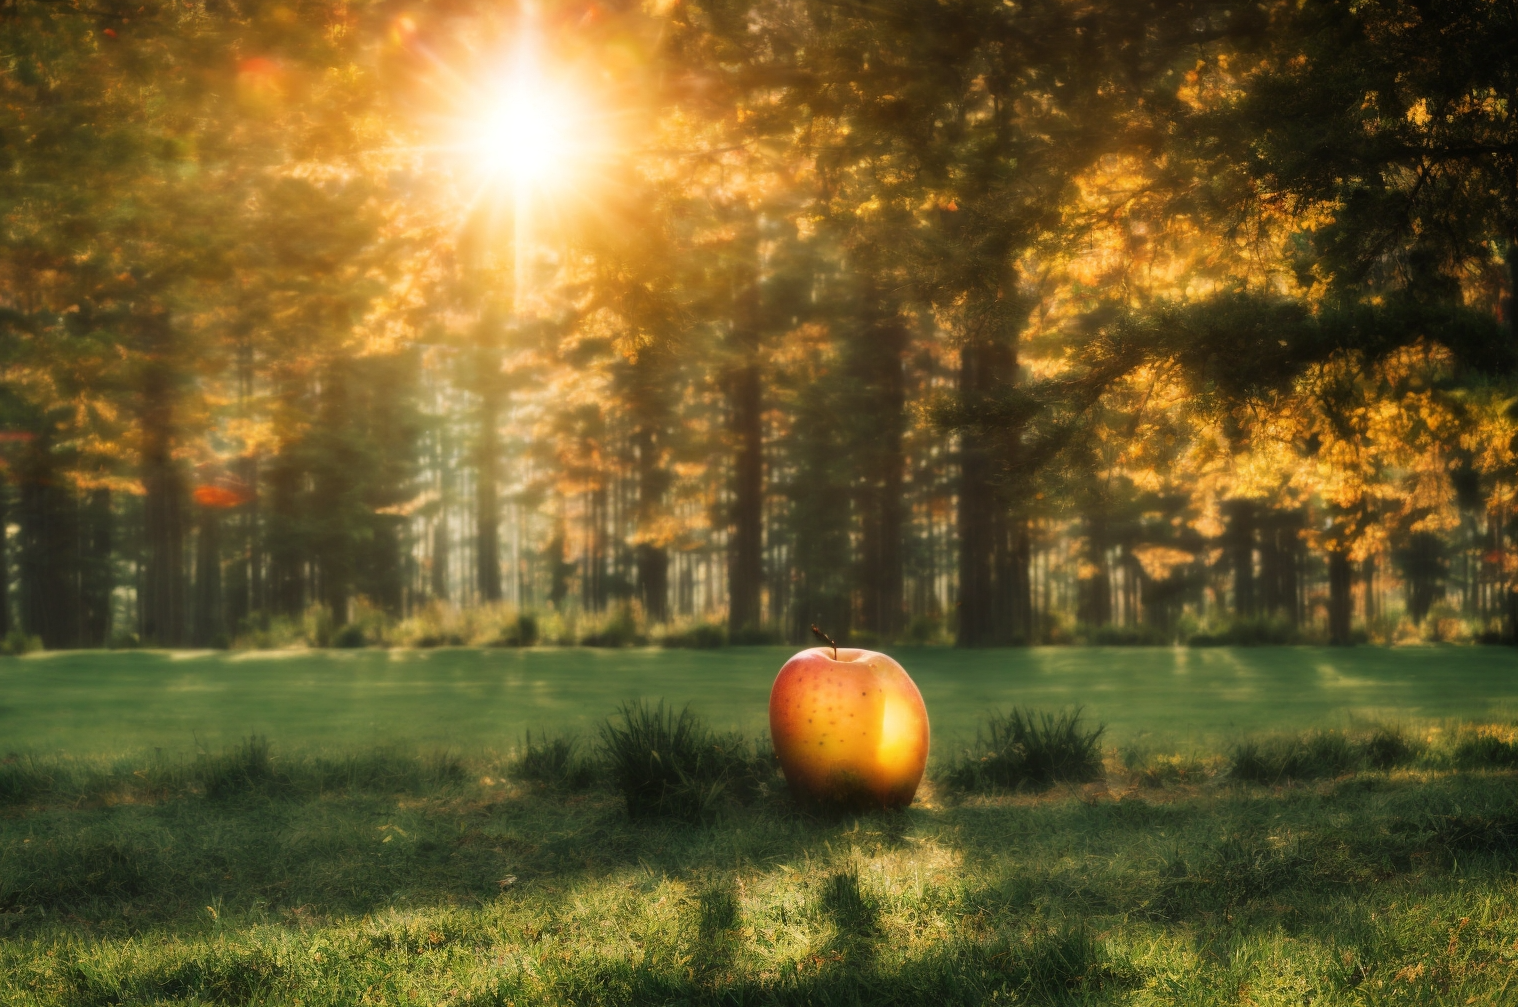 Best Sunlight Exposure for Apple Trees